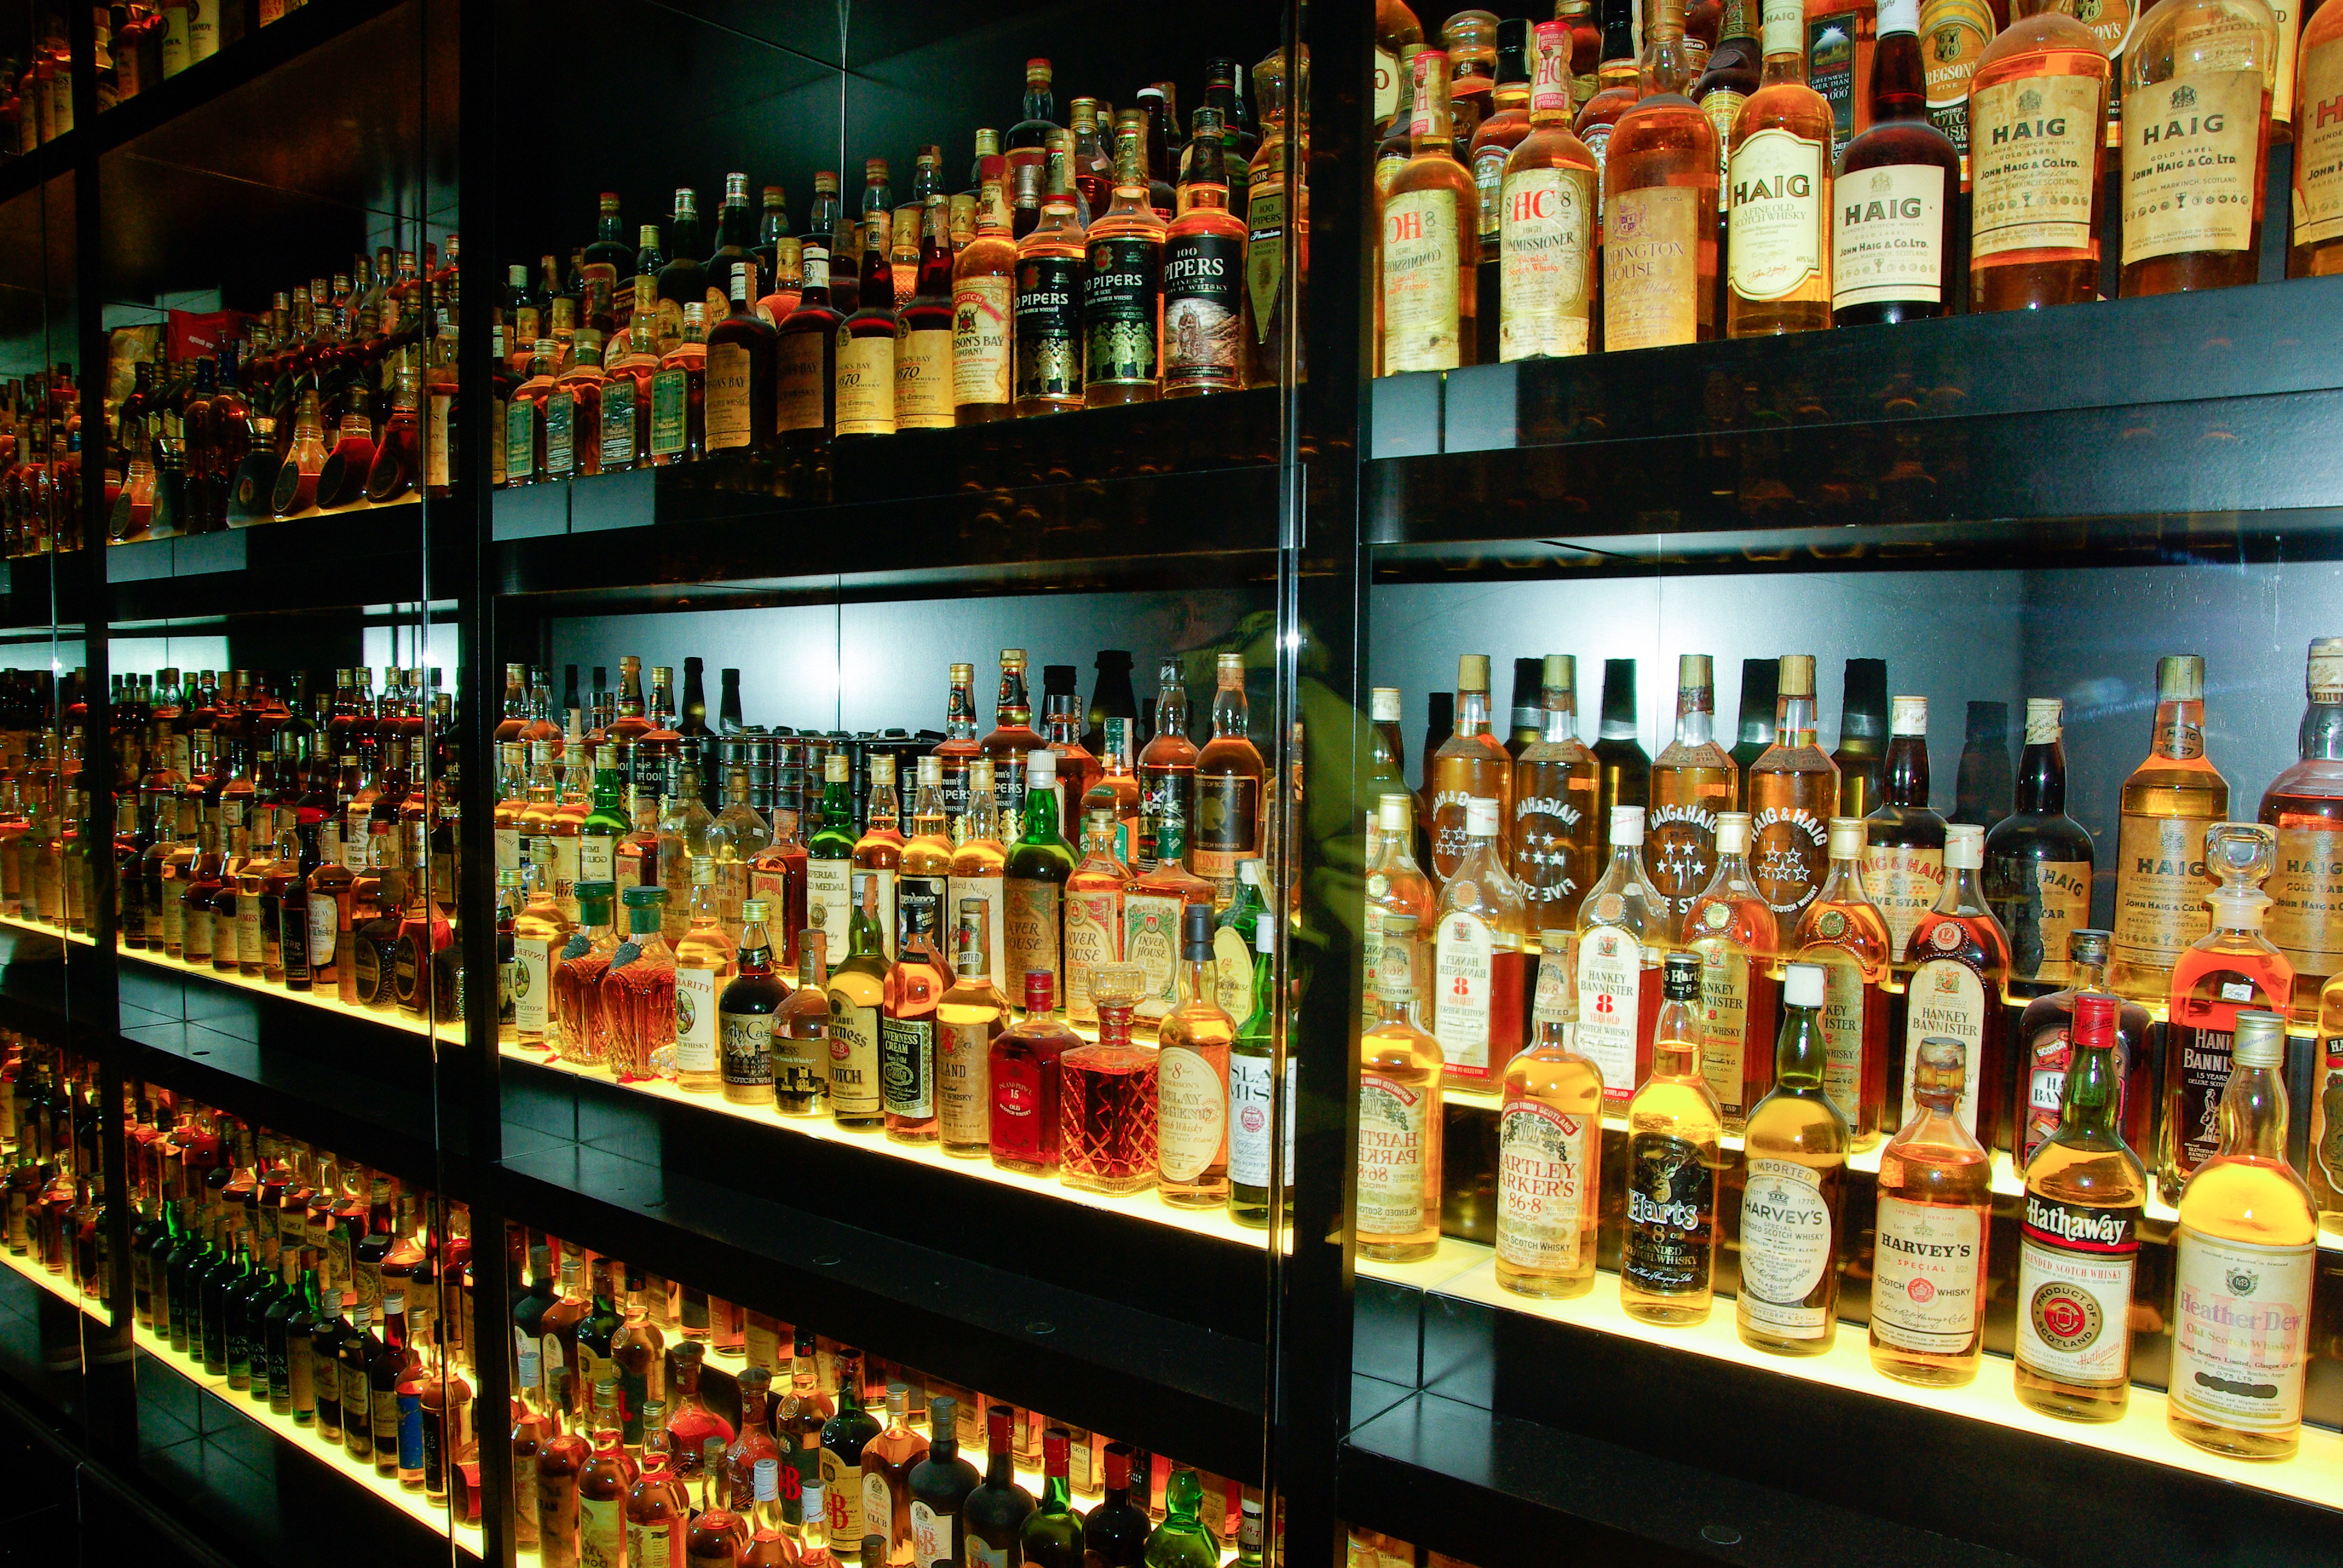 В Нижнем Новгороде прикрыли бар, в которому торговали алкоголем неизвестного происхождения